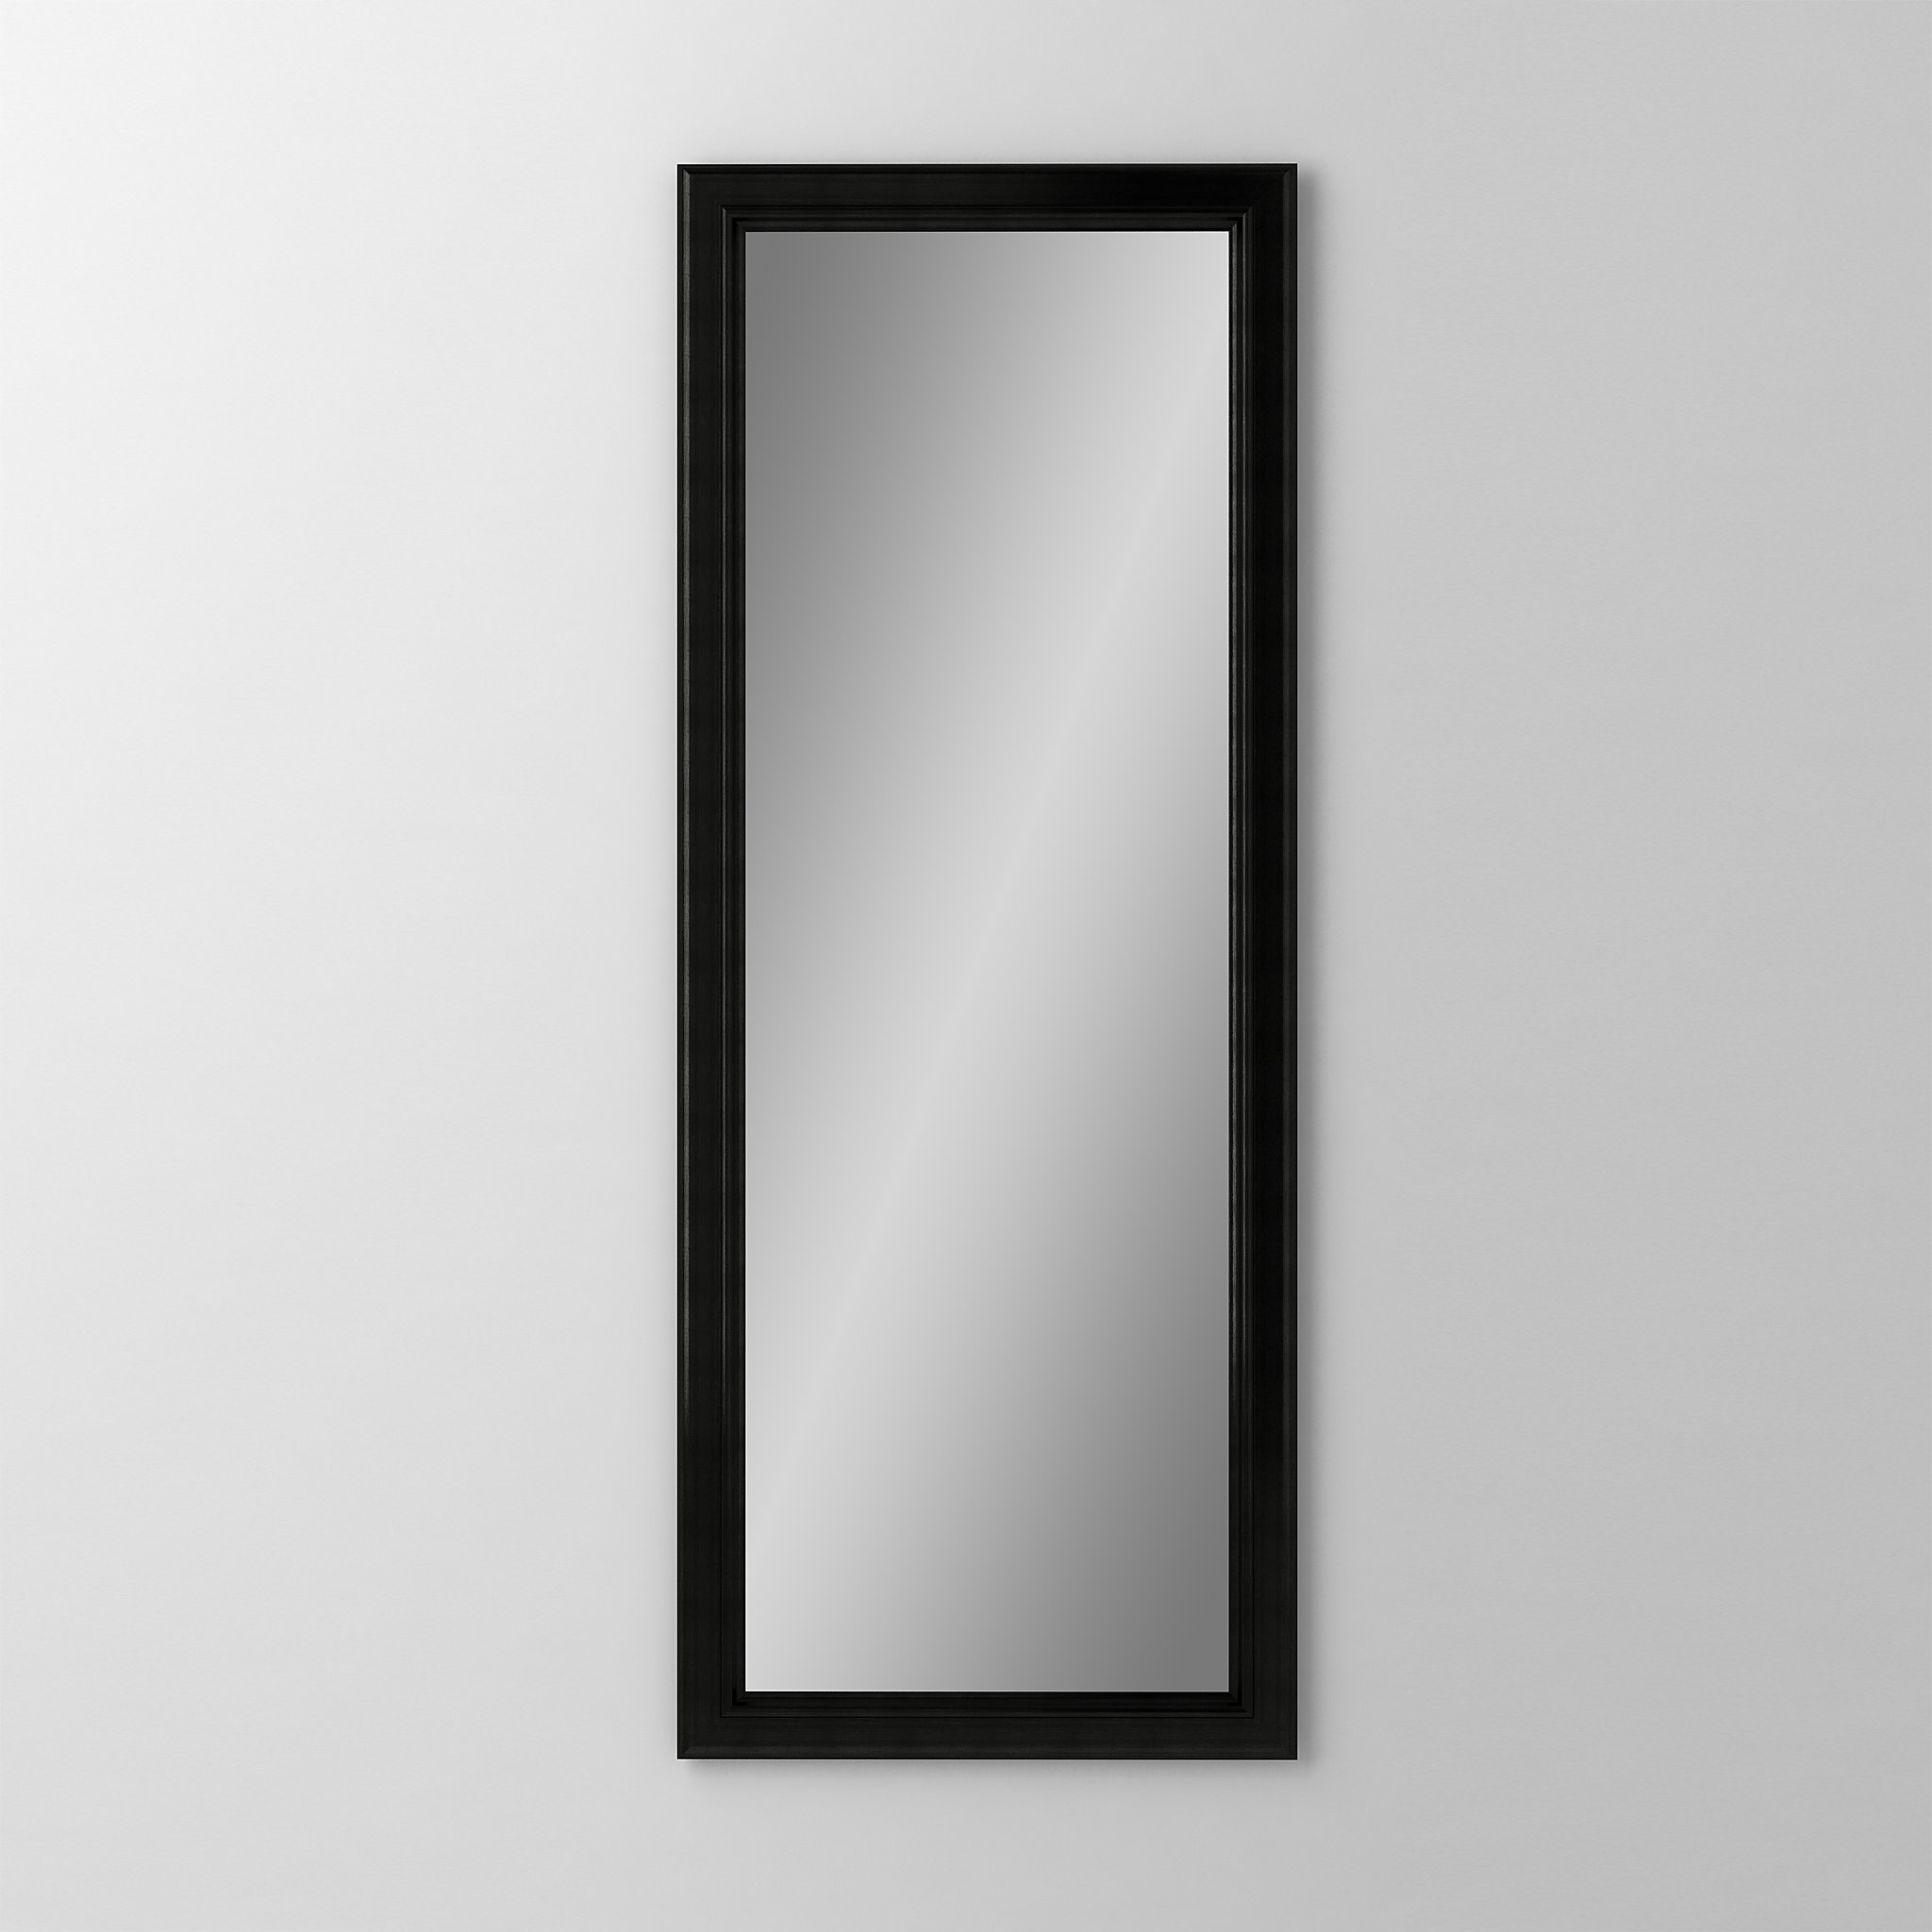 Robern DM1640BM74Main Line Mirror, 16" x 40" x 1-5/8", Bryn Mawr Frame, Brushed Black